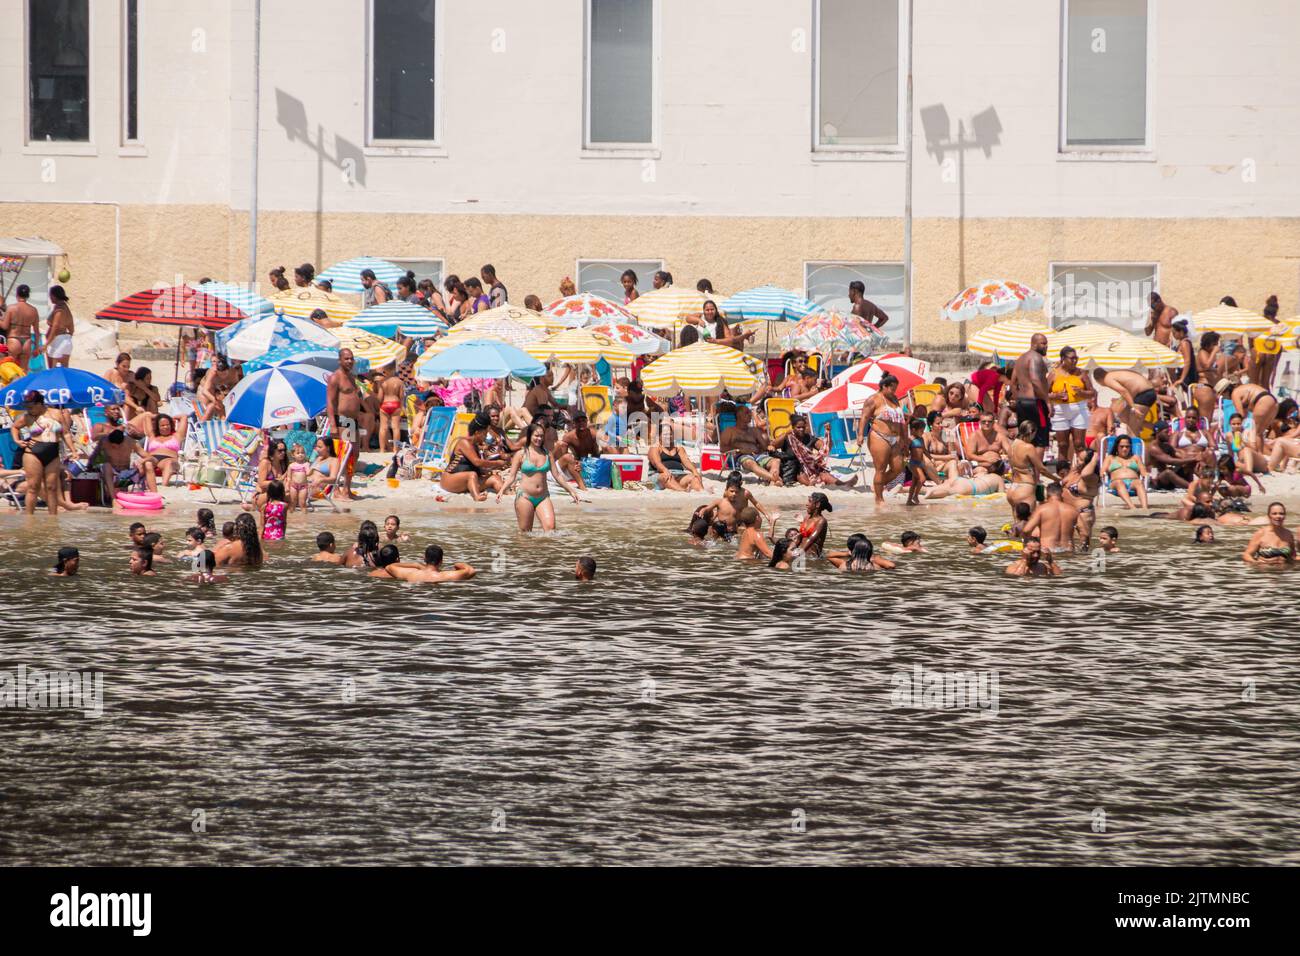 urca-Strand während der Coronavirus-Pandemie in Rio de Janeiro, Brasilien - 6. September 2020: Menschen am urca-Strand während der Coronavirus-Pandemie, e Stockfoto